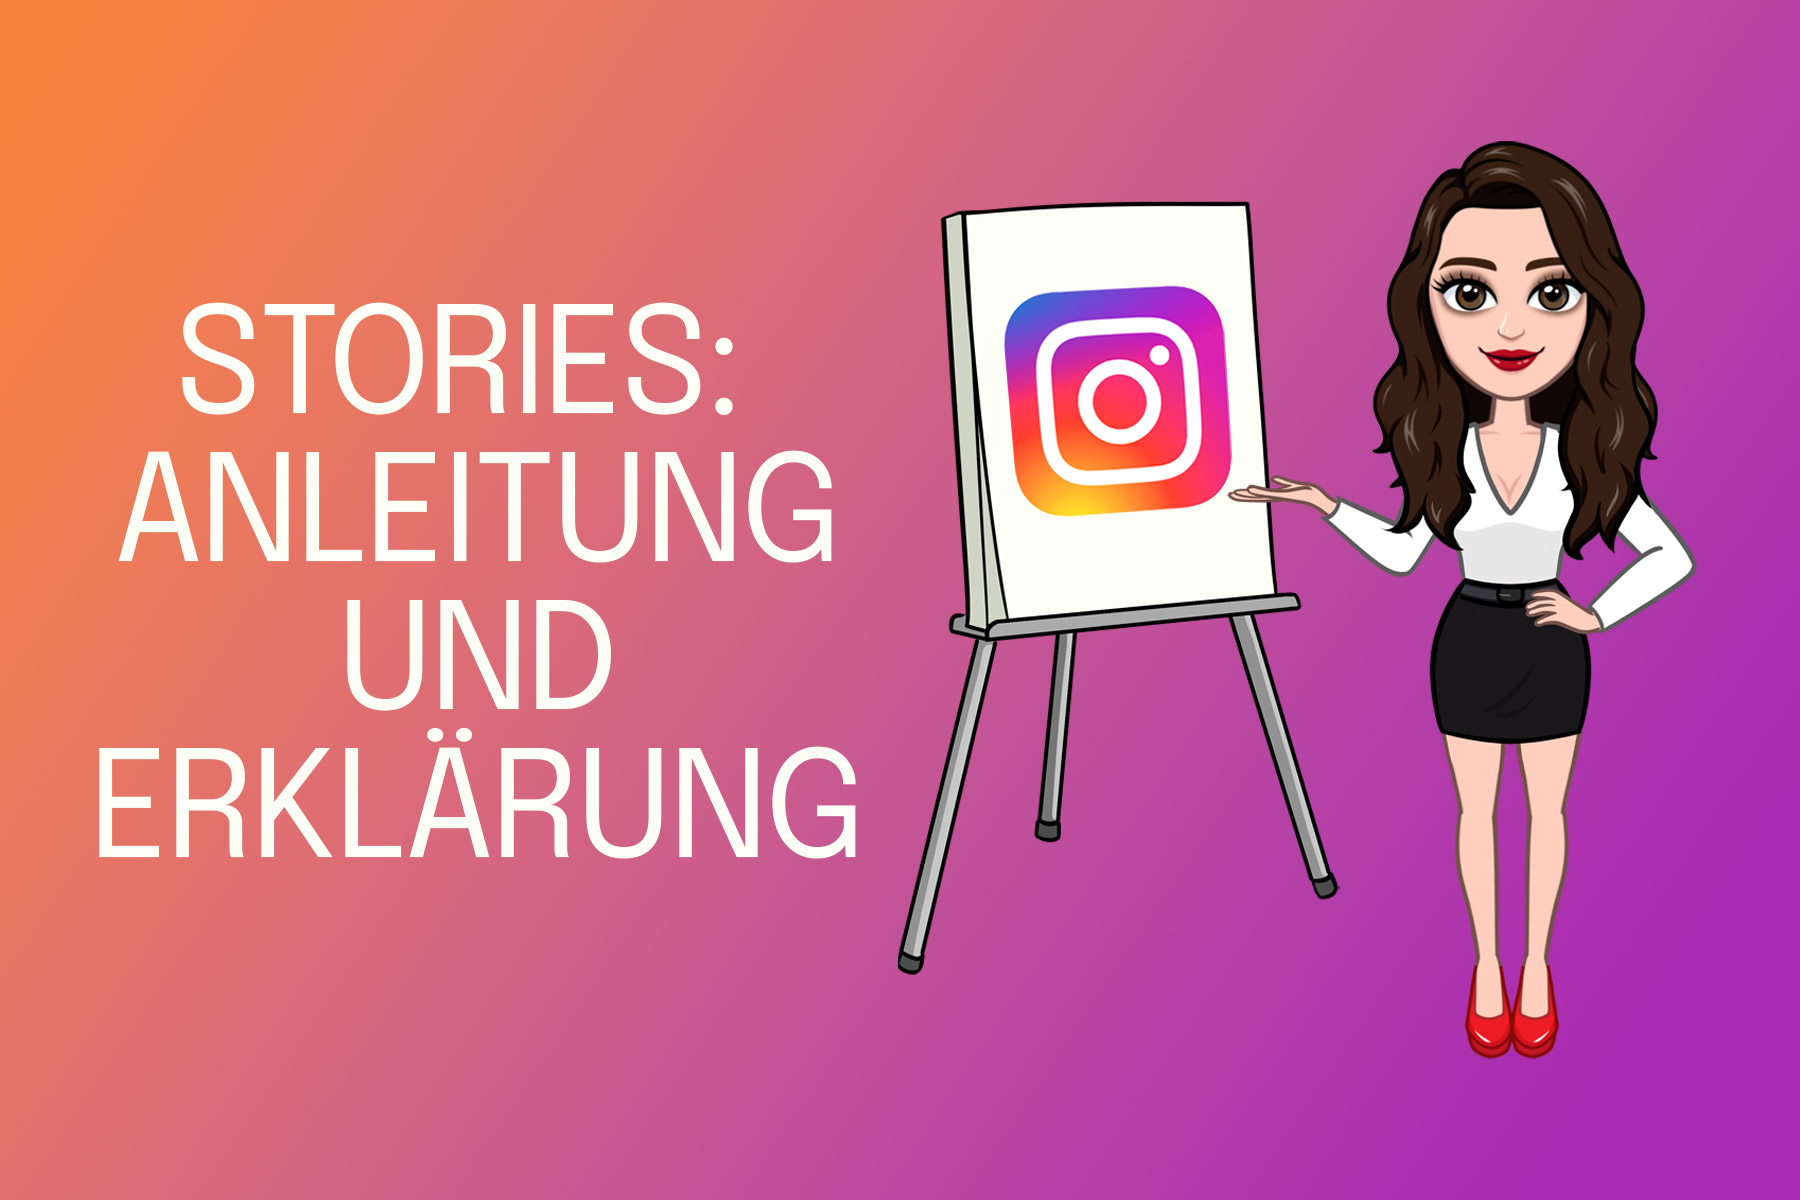 Instagram Stories - Anleitung, Erklärung und Tipps - Wie funktioniert Instagram Stories, was muss man beachten?